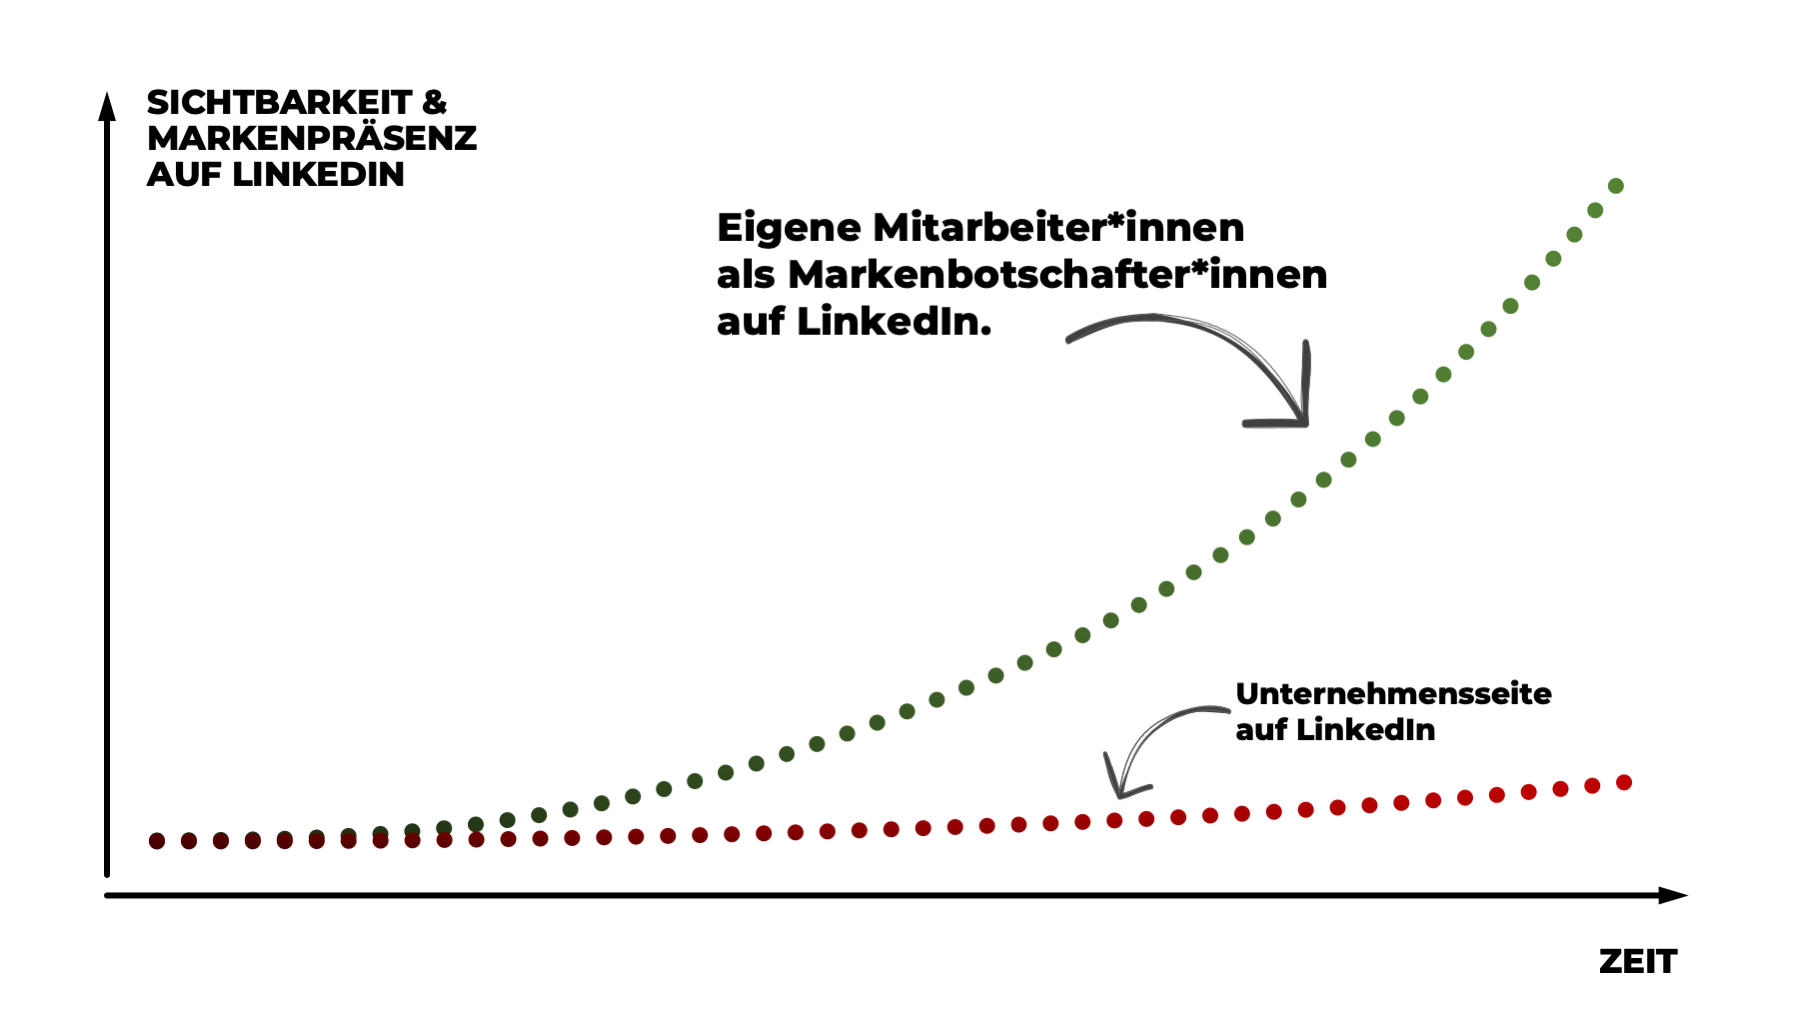 linkedin-marketing-Sichtbarkeit-auf-Linkedin-durch-Mitarbeiter-einstein1